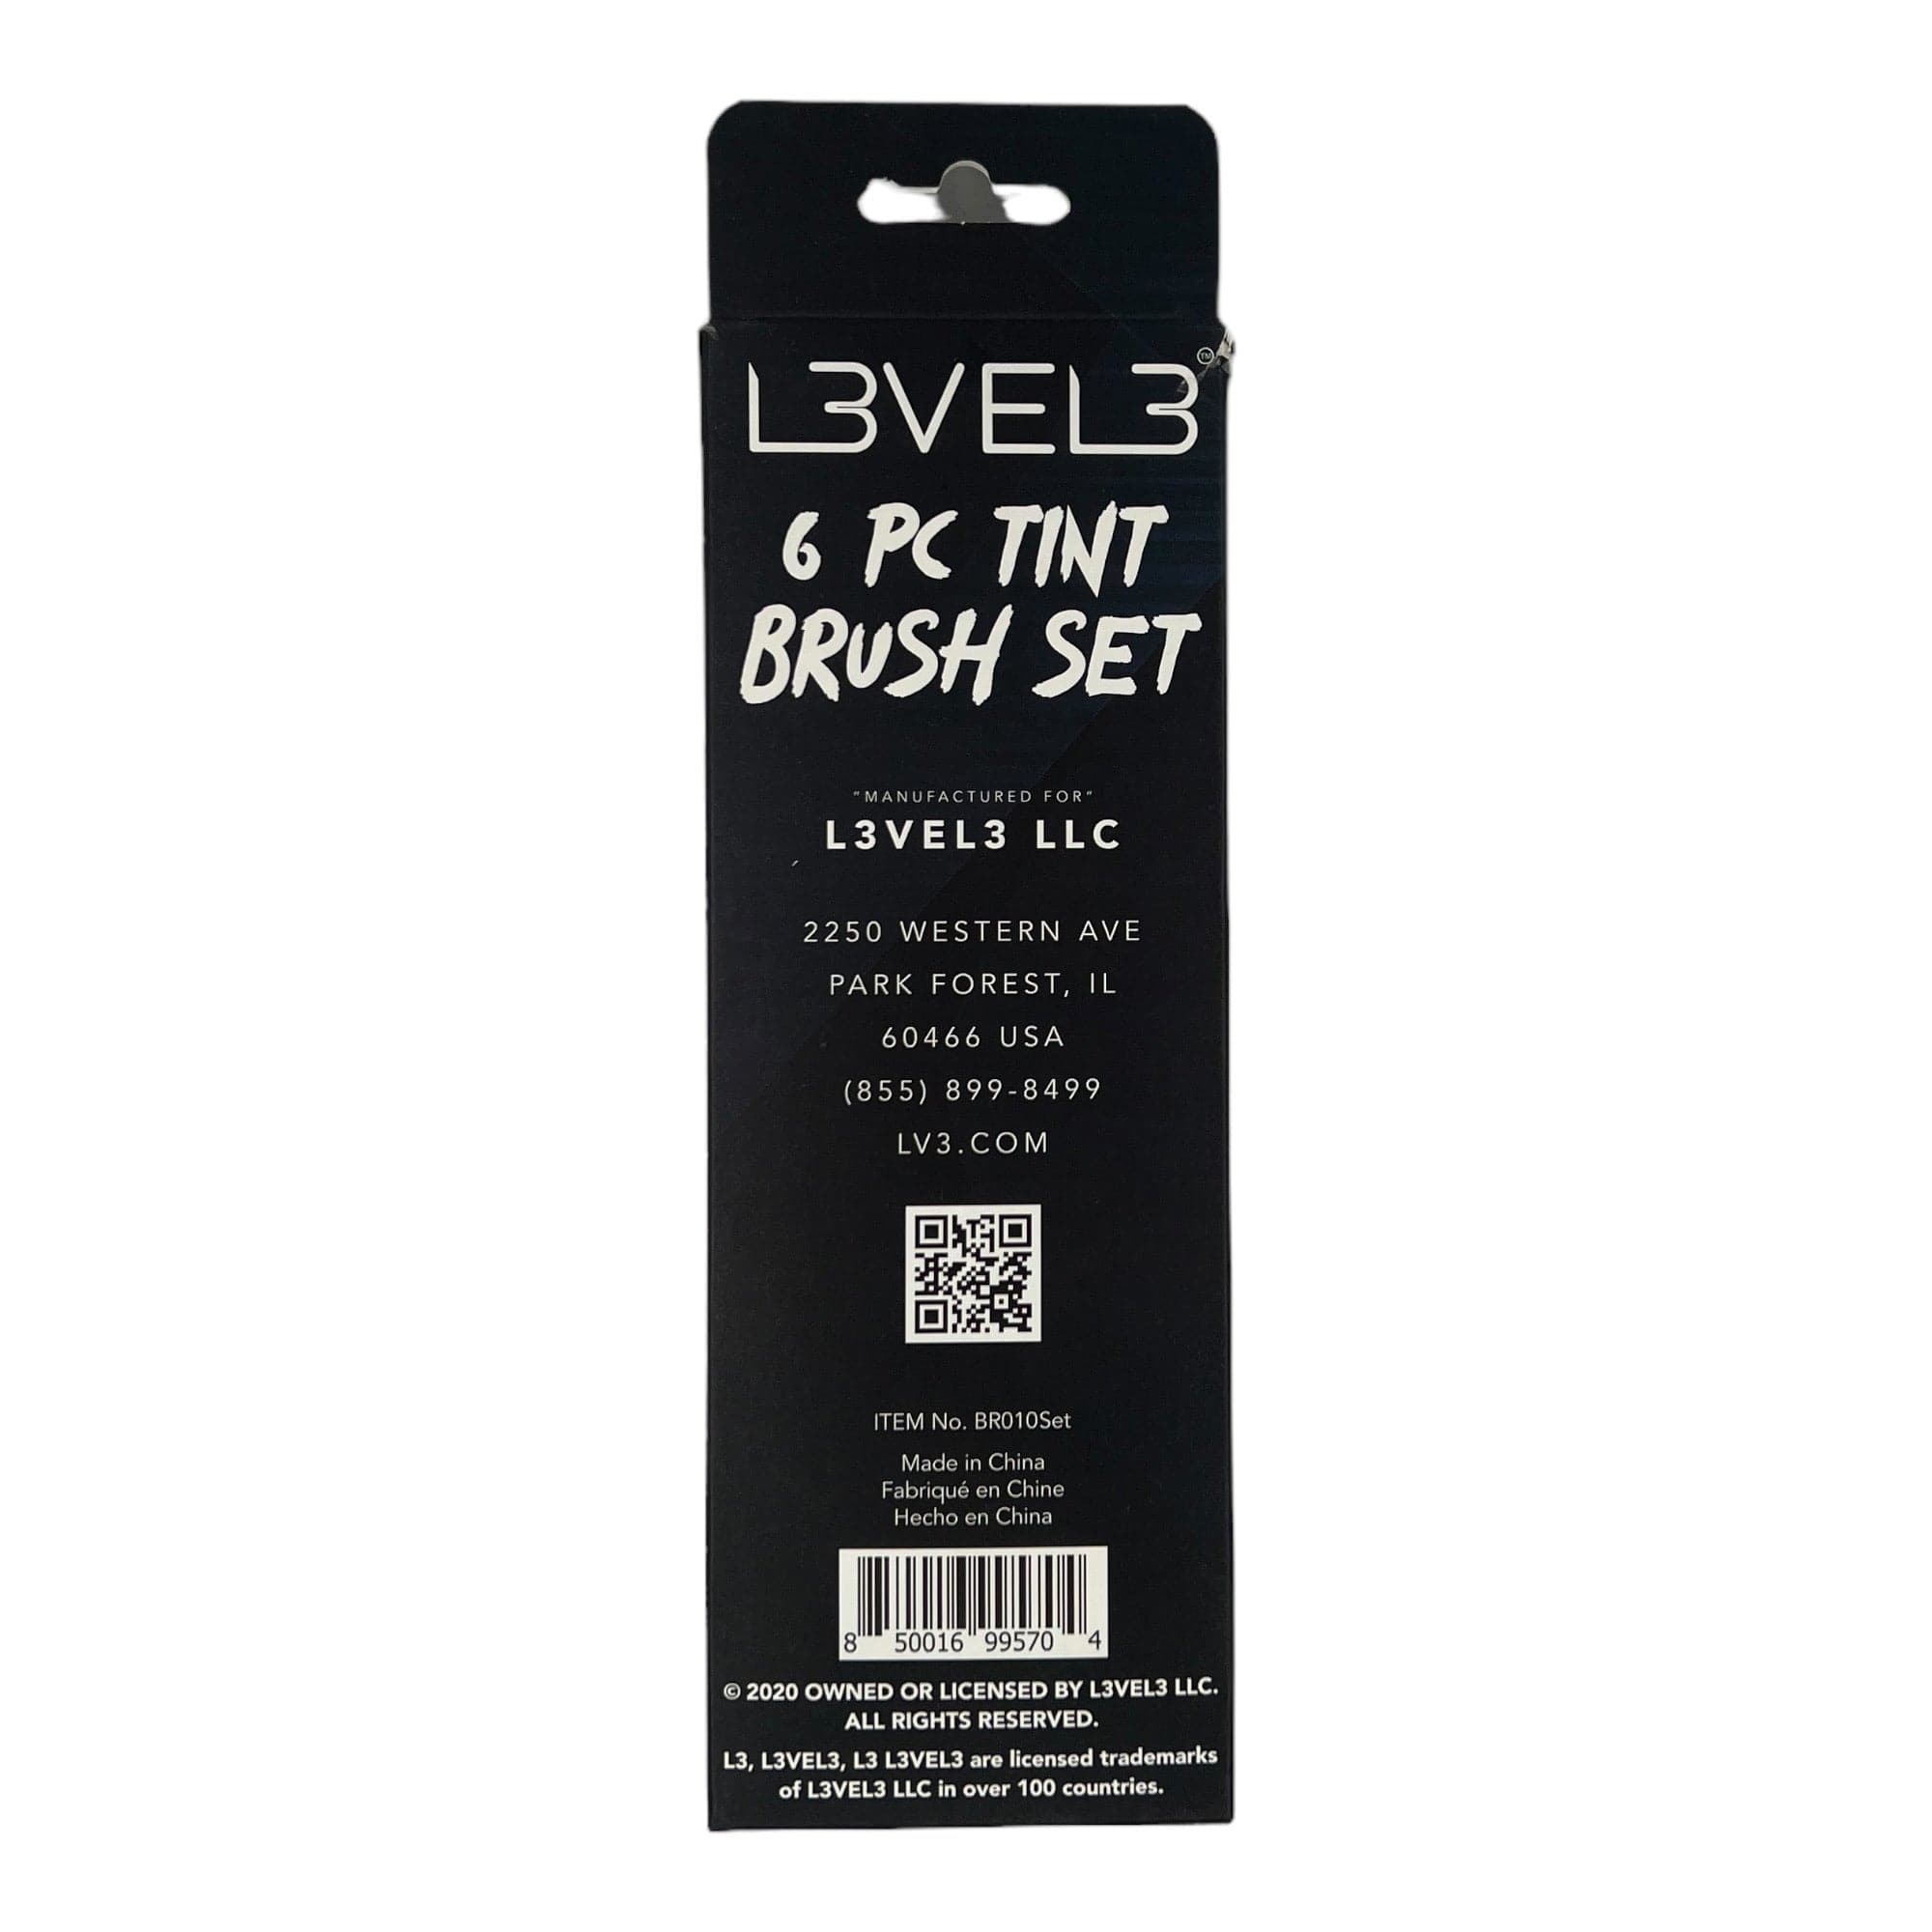 L3VEL3 - Tint Brush Set 6pcs